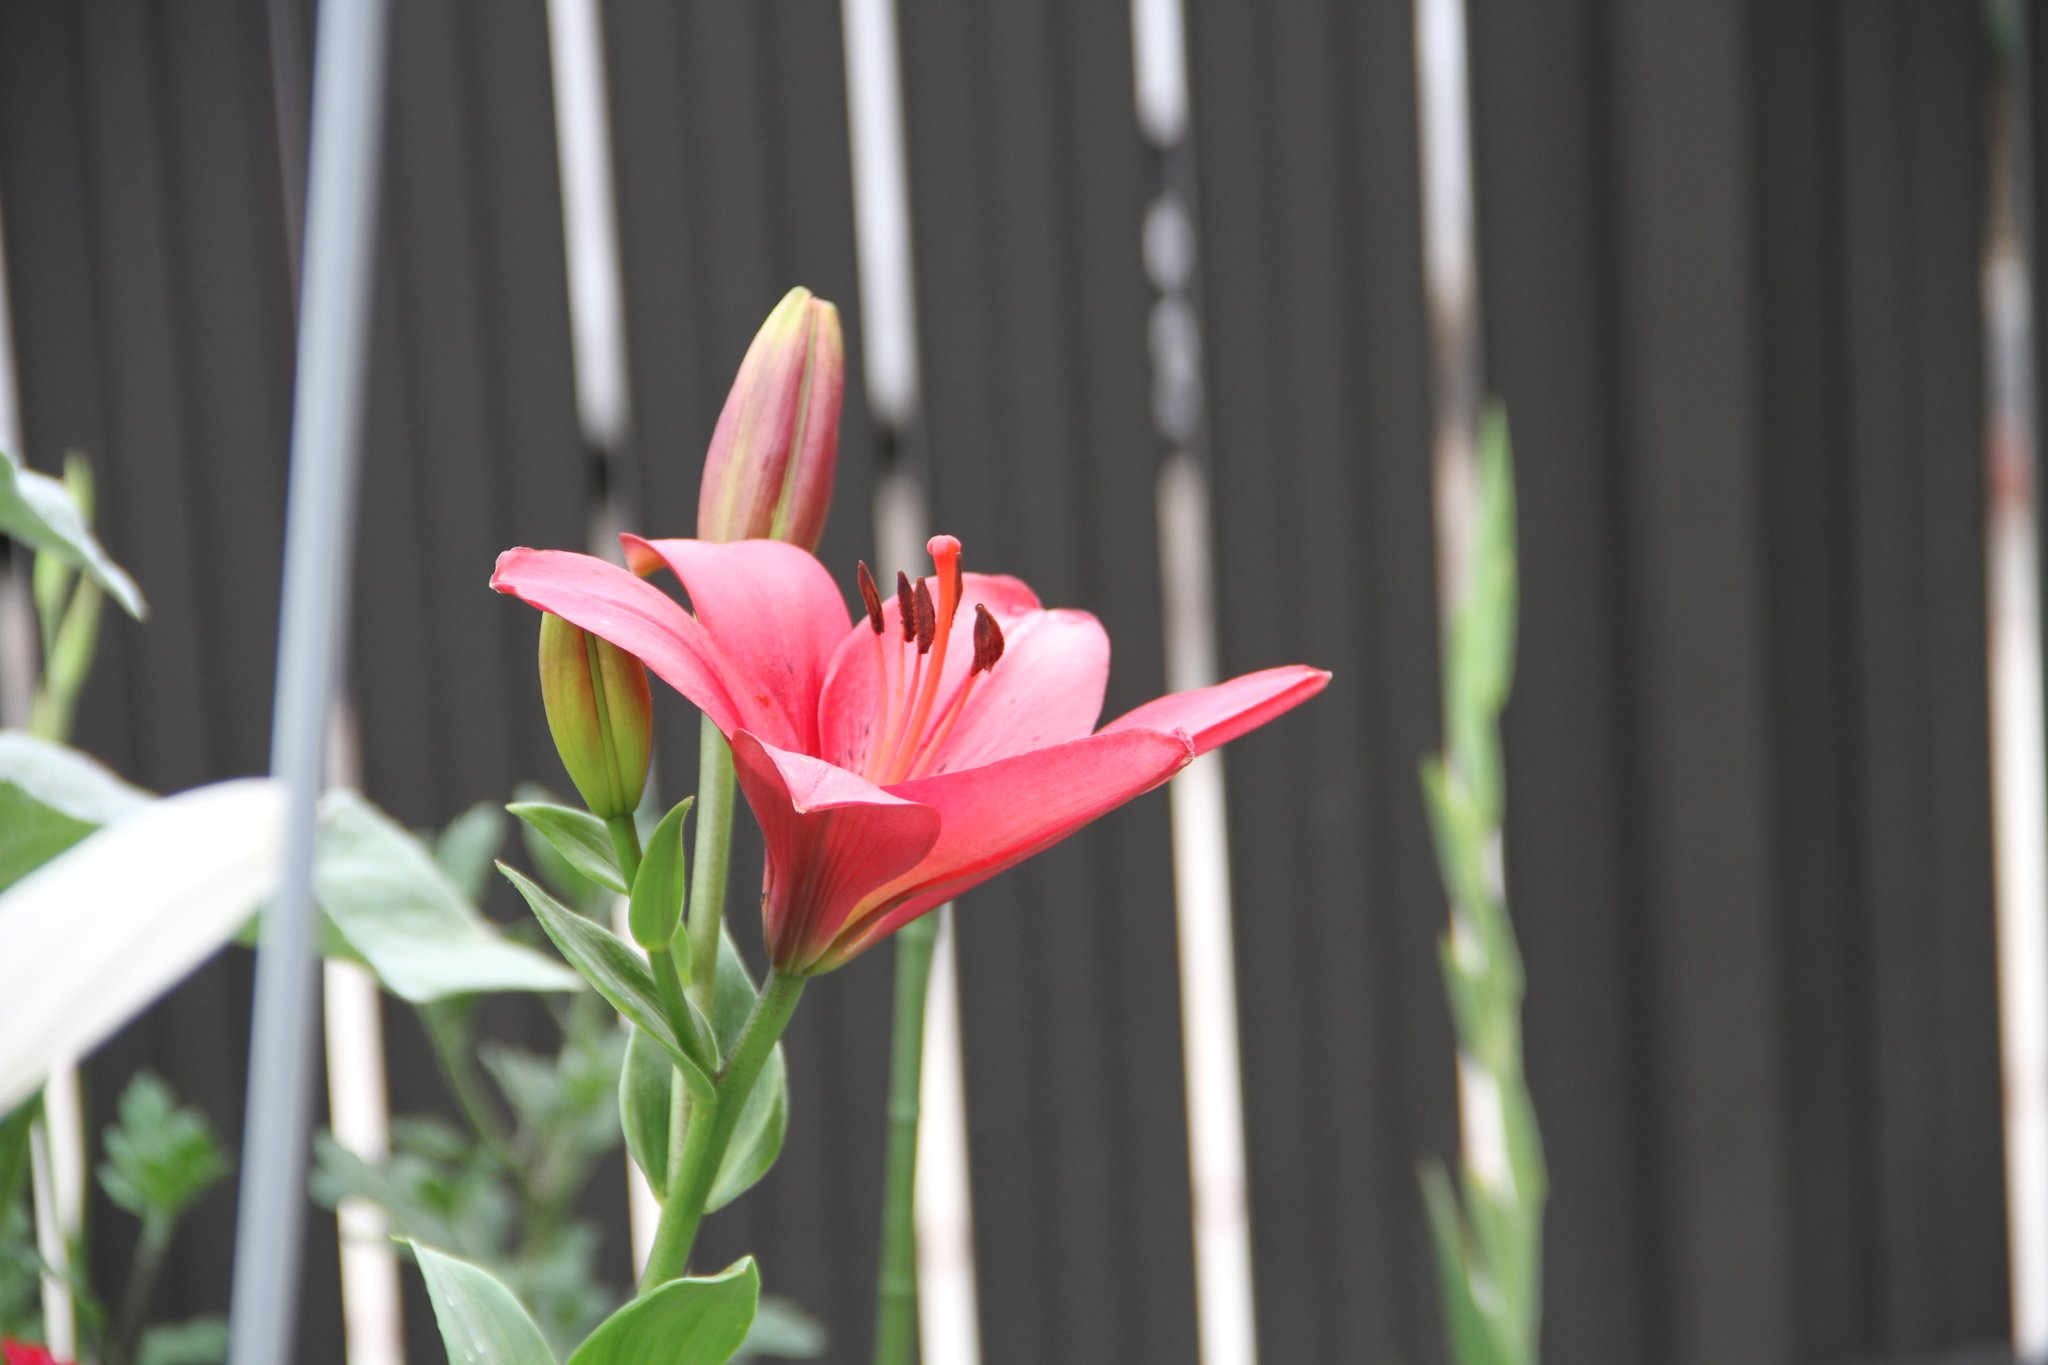 シグオジサン カサブランカの白と赤の花が咲いていました 鉄砲をも咲いていました ユリの花 ファインダー越しの私の世界 社員好きの人と繋がりたい 私の見た記憶 T Co Yssobn4ioq Twitter